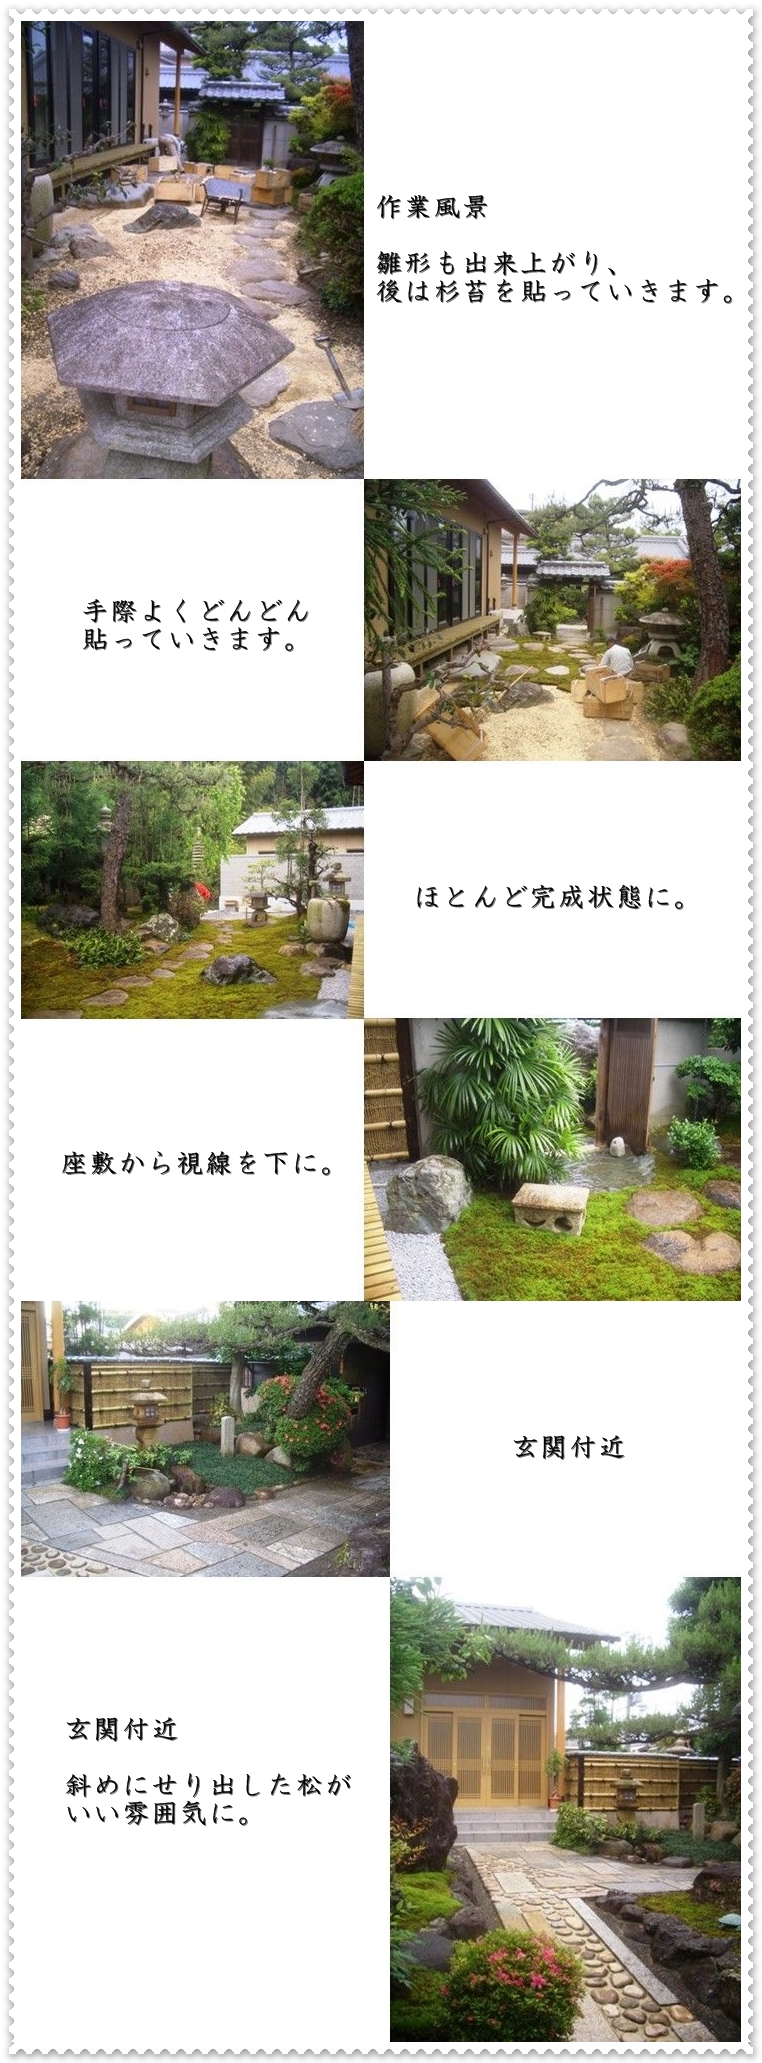 京都市松井邸庭園作業風景の画像